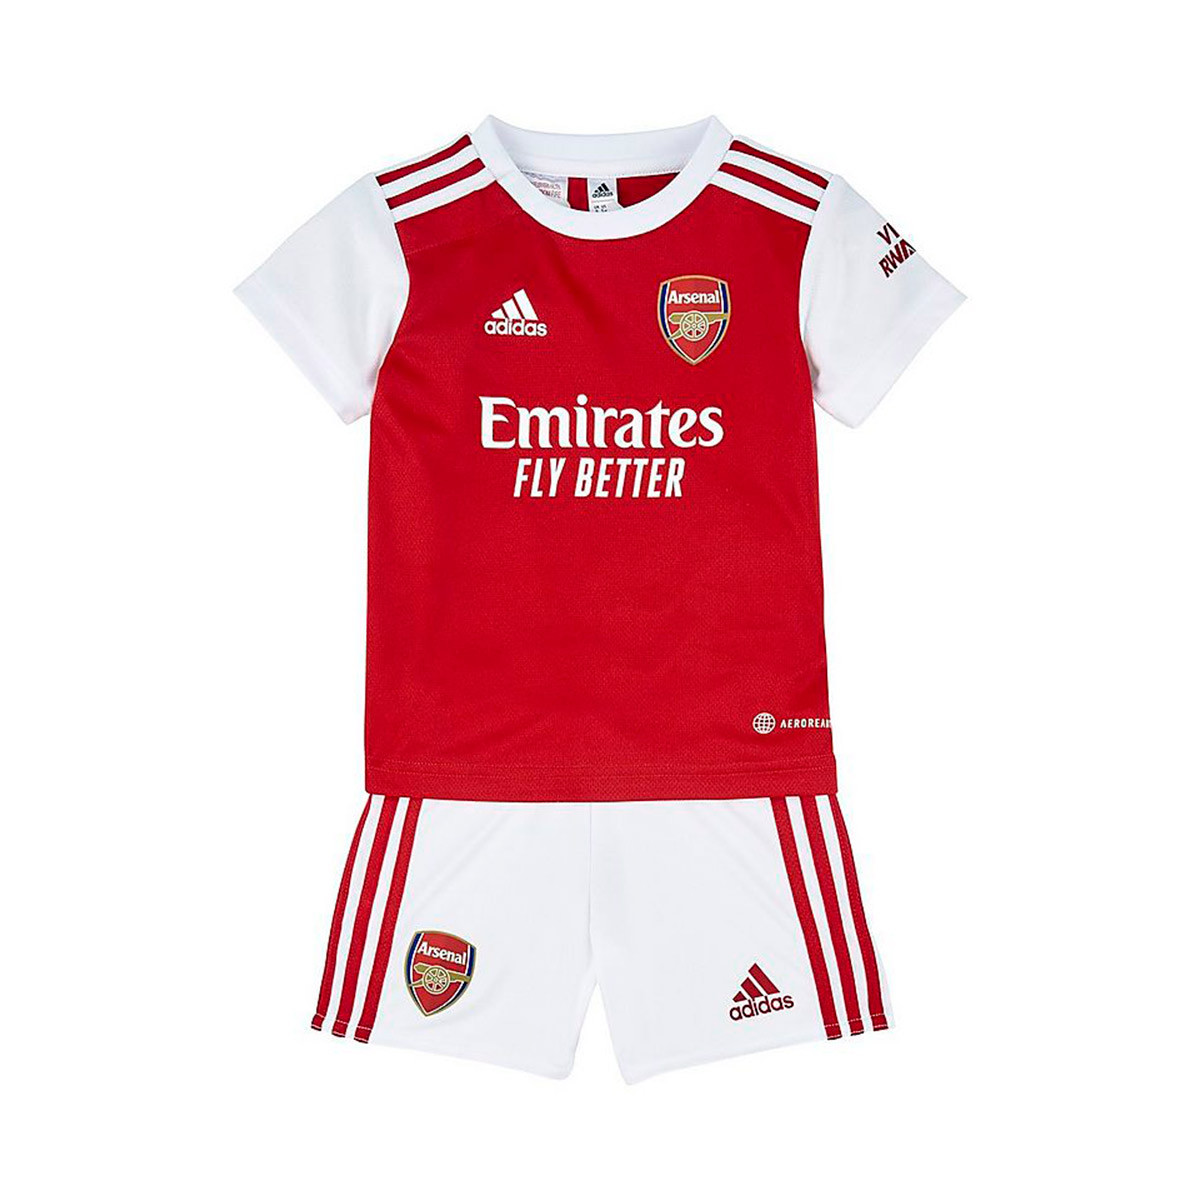 Arsenal New Kits | tunersread.com